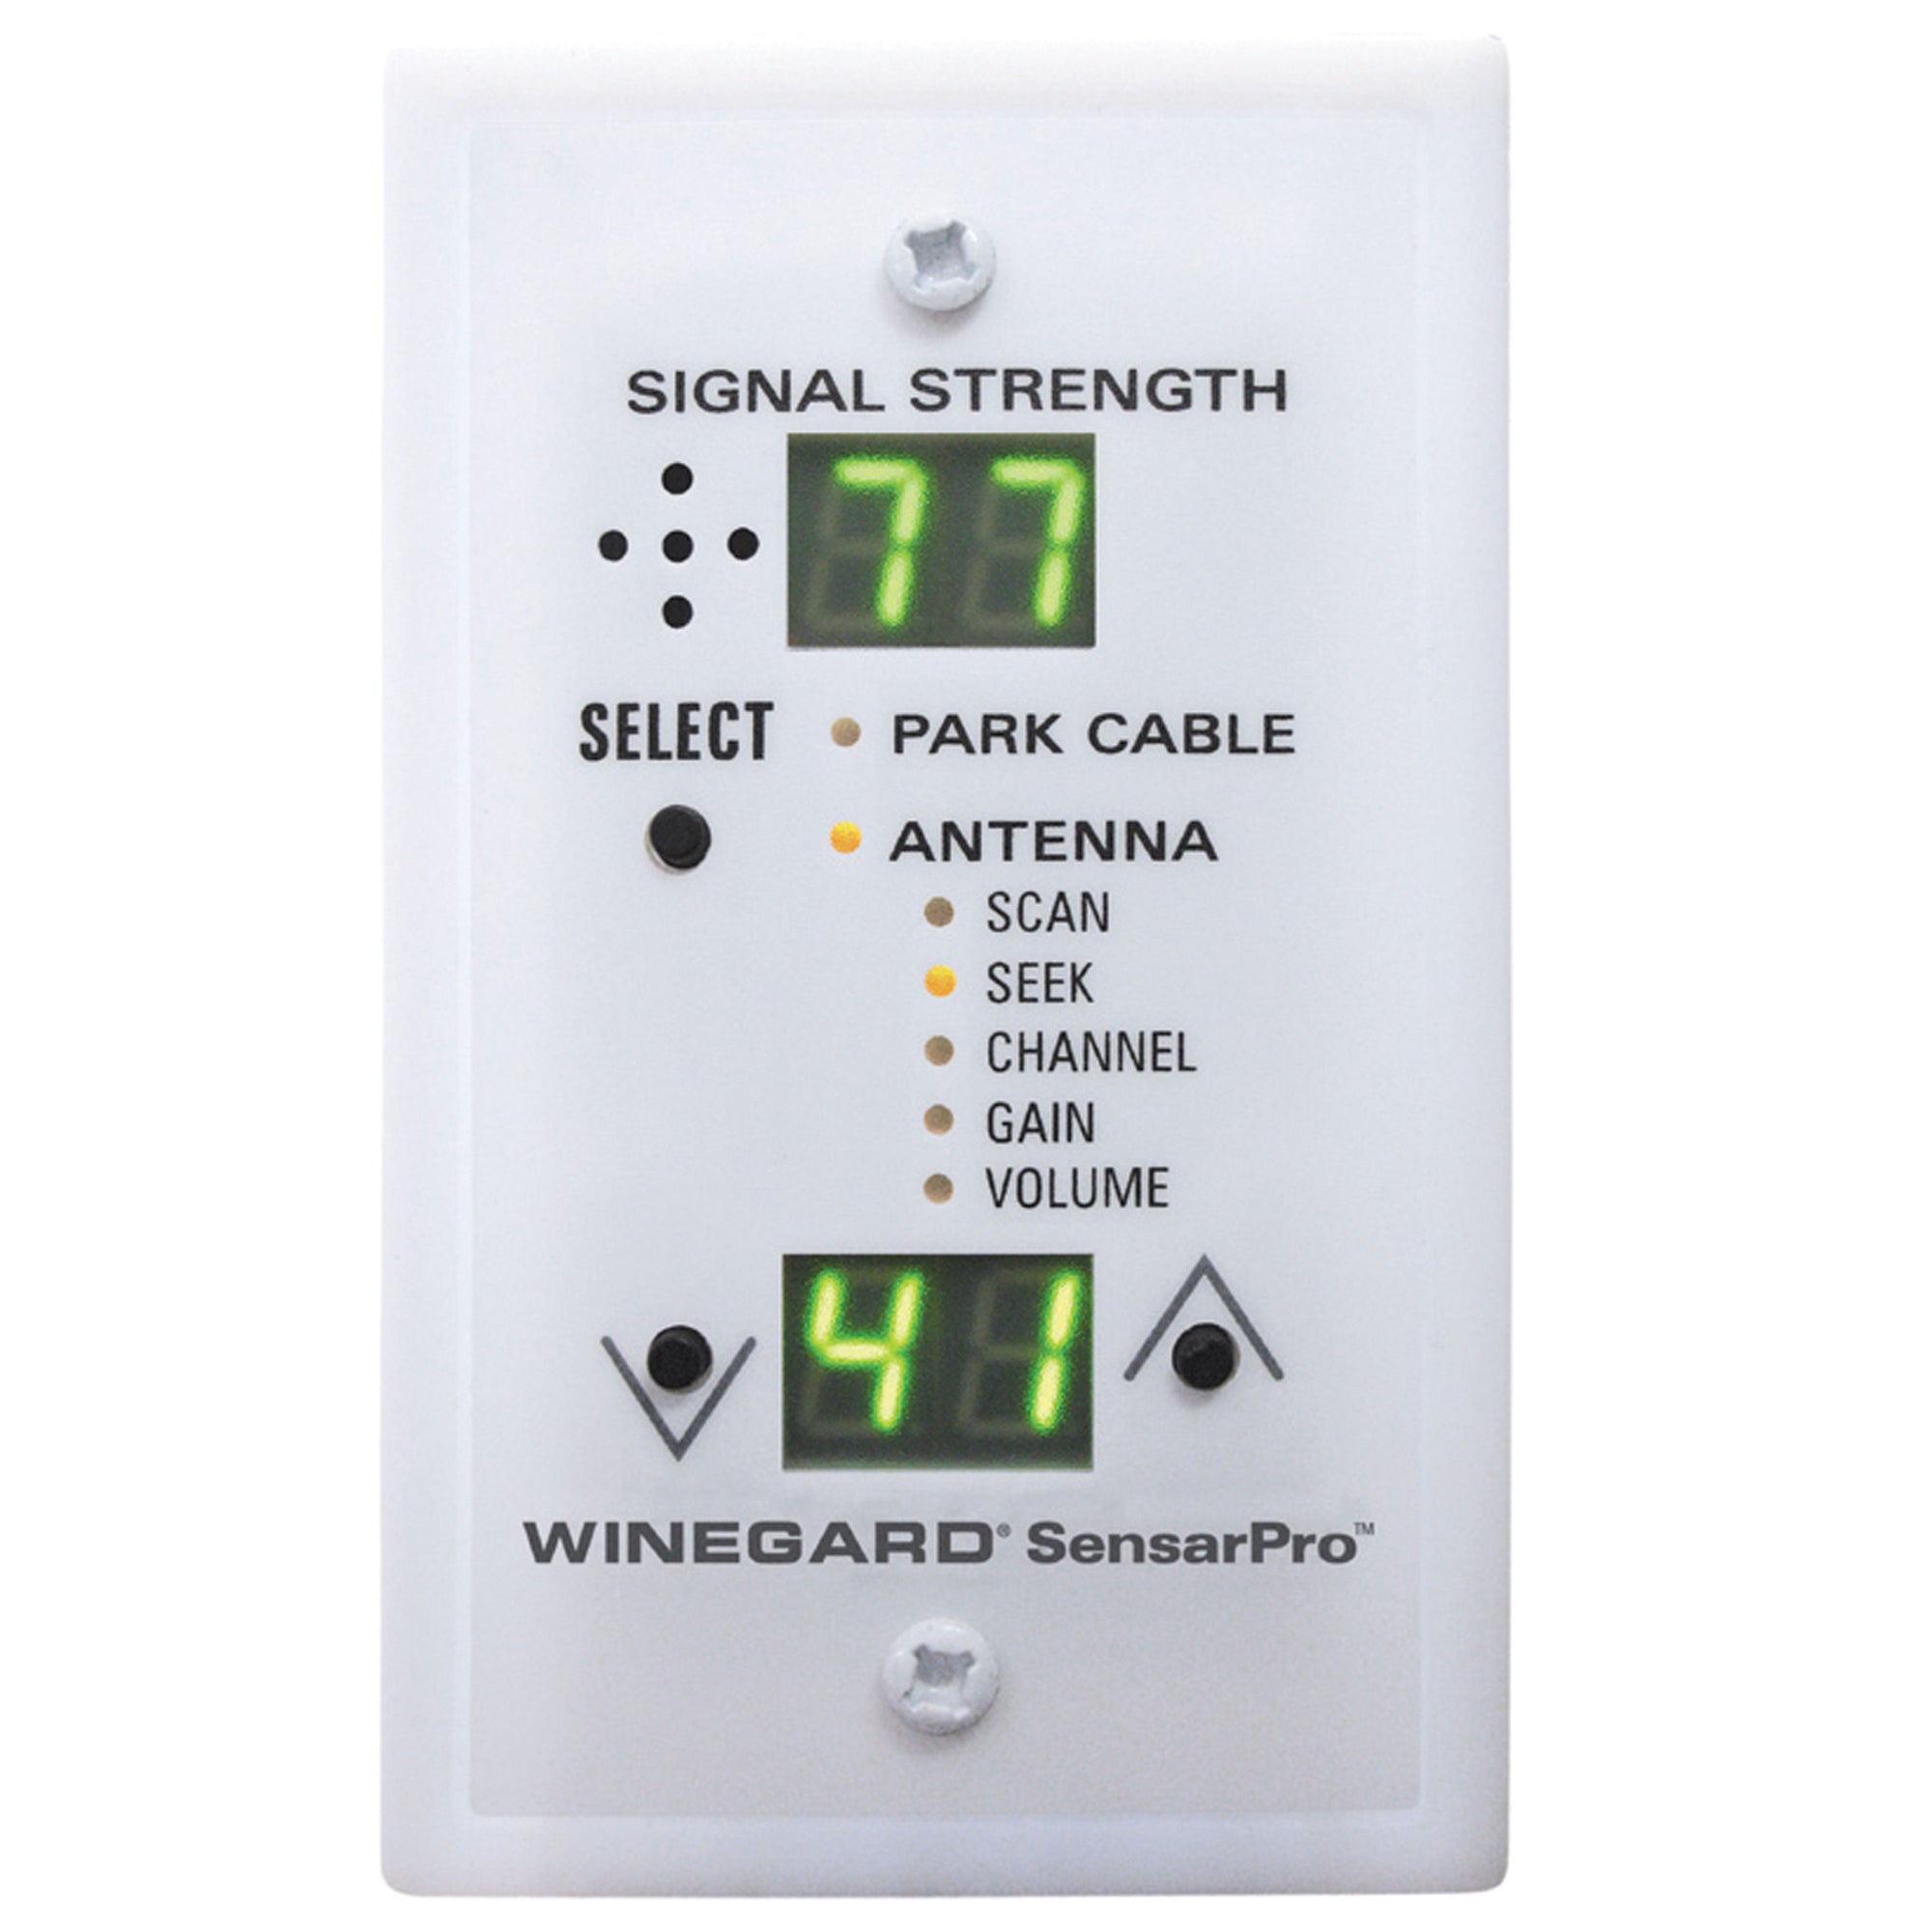 Winegard RFL-342 SensarPro TV Signal Meter - White